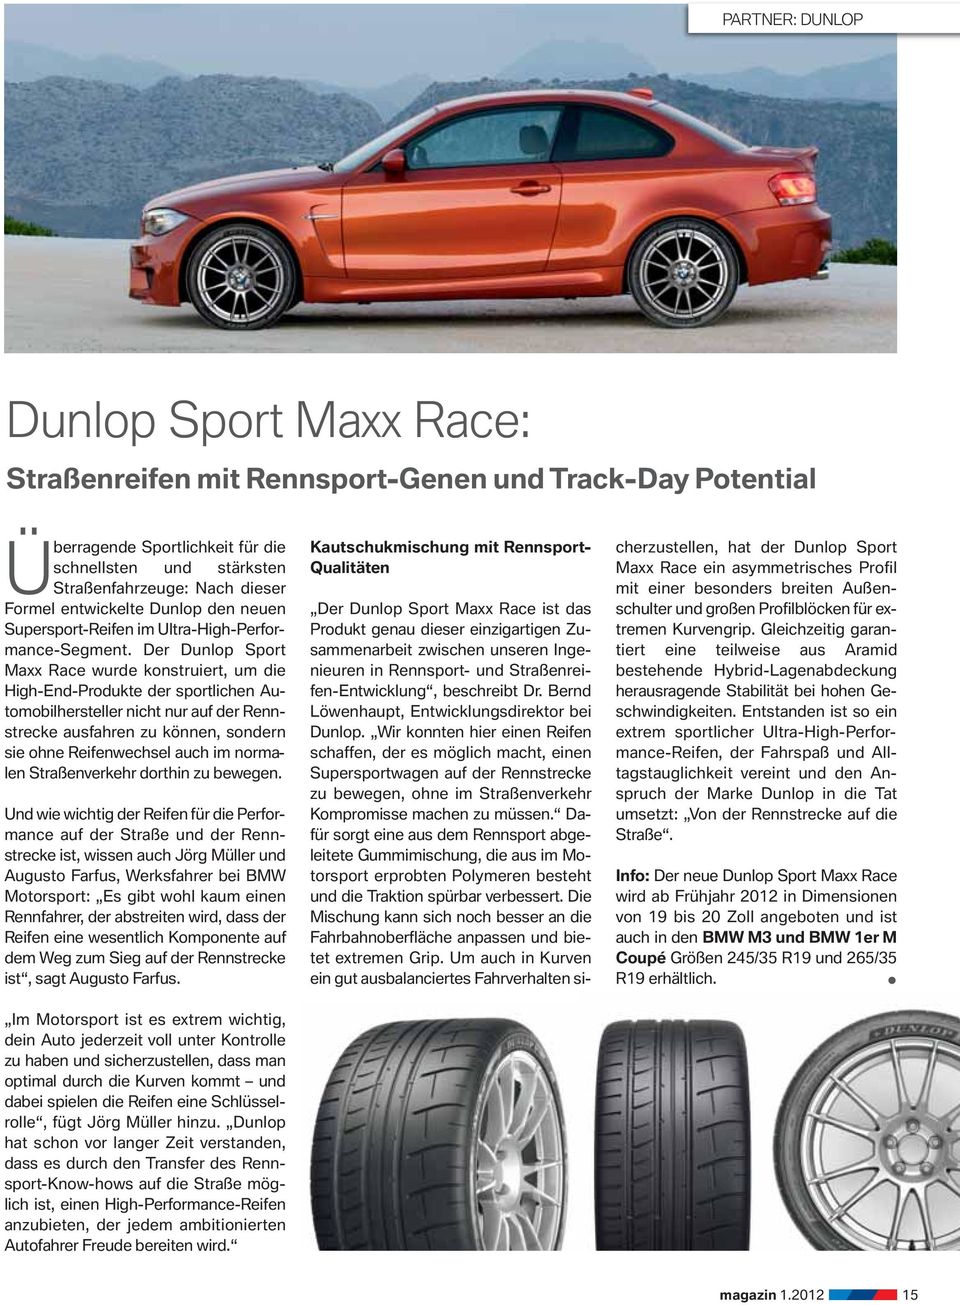 Der Dunlop Sport Maxx Race wurde konstruiert, um die High-End-Produkte der sportlichen Automobilhersteller nicht nur auf der Rennstrecke ausfahren zu können, sondern sie ohne Reifenwechsel auch im